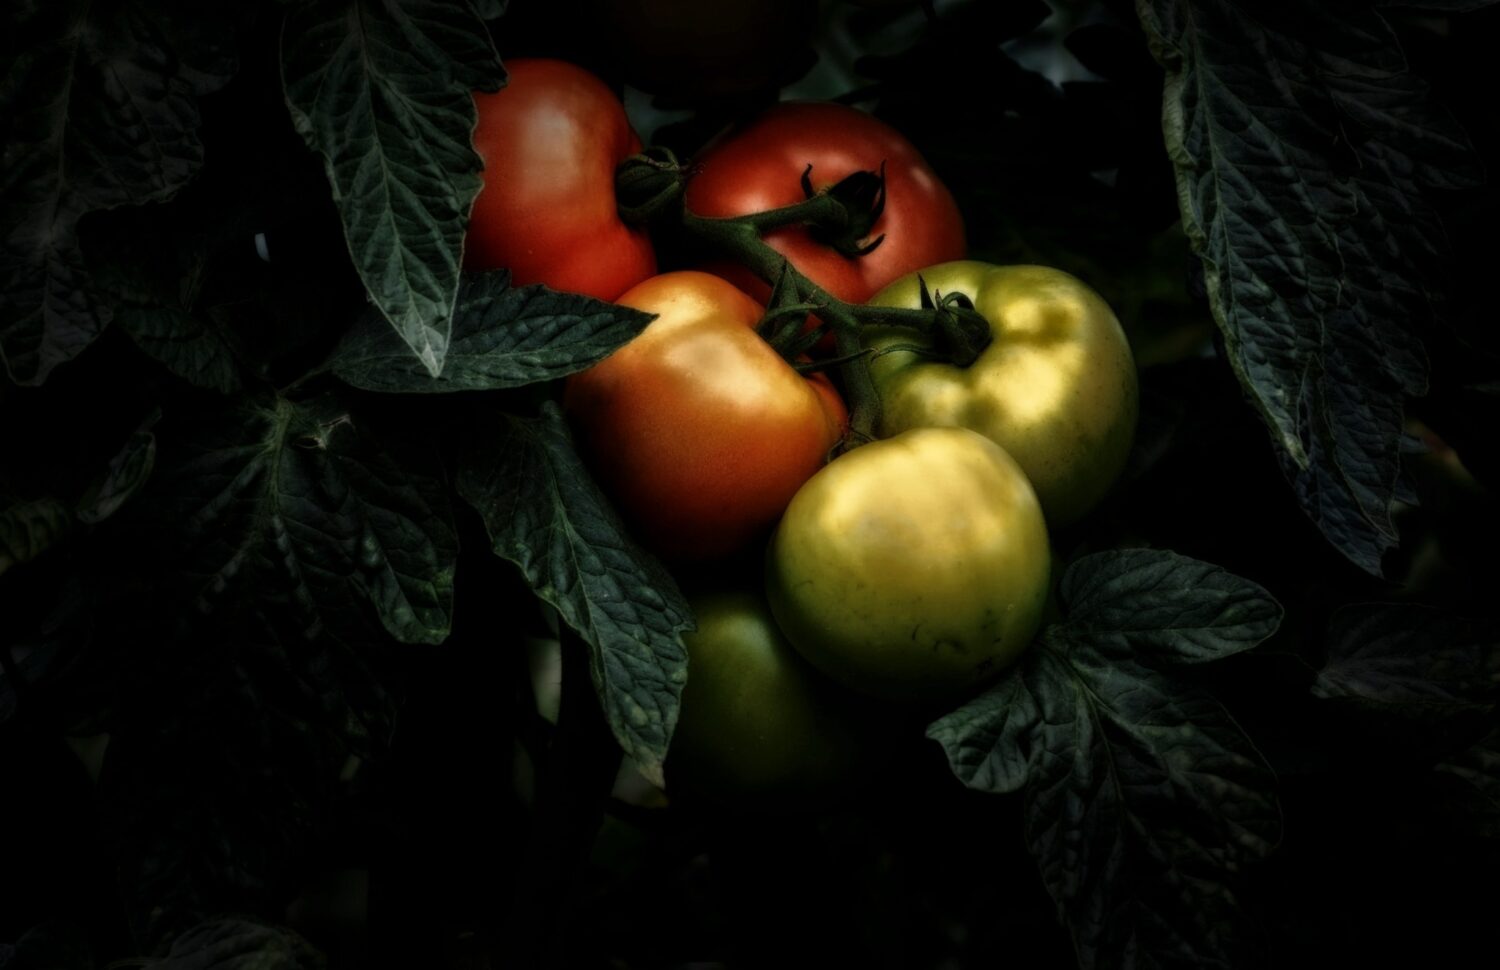 3e prix « Tomates grappe » © Argine